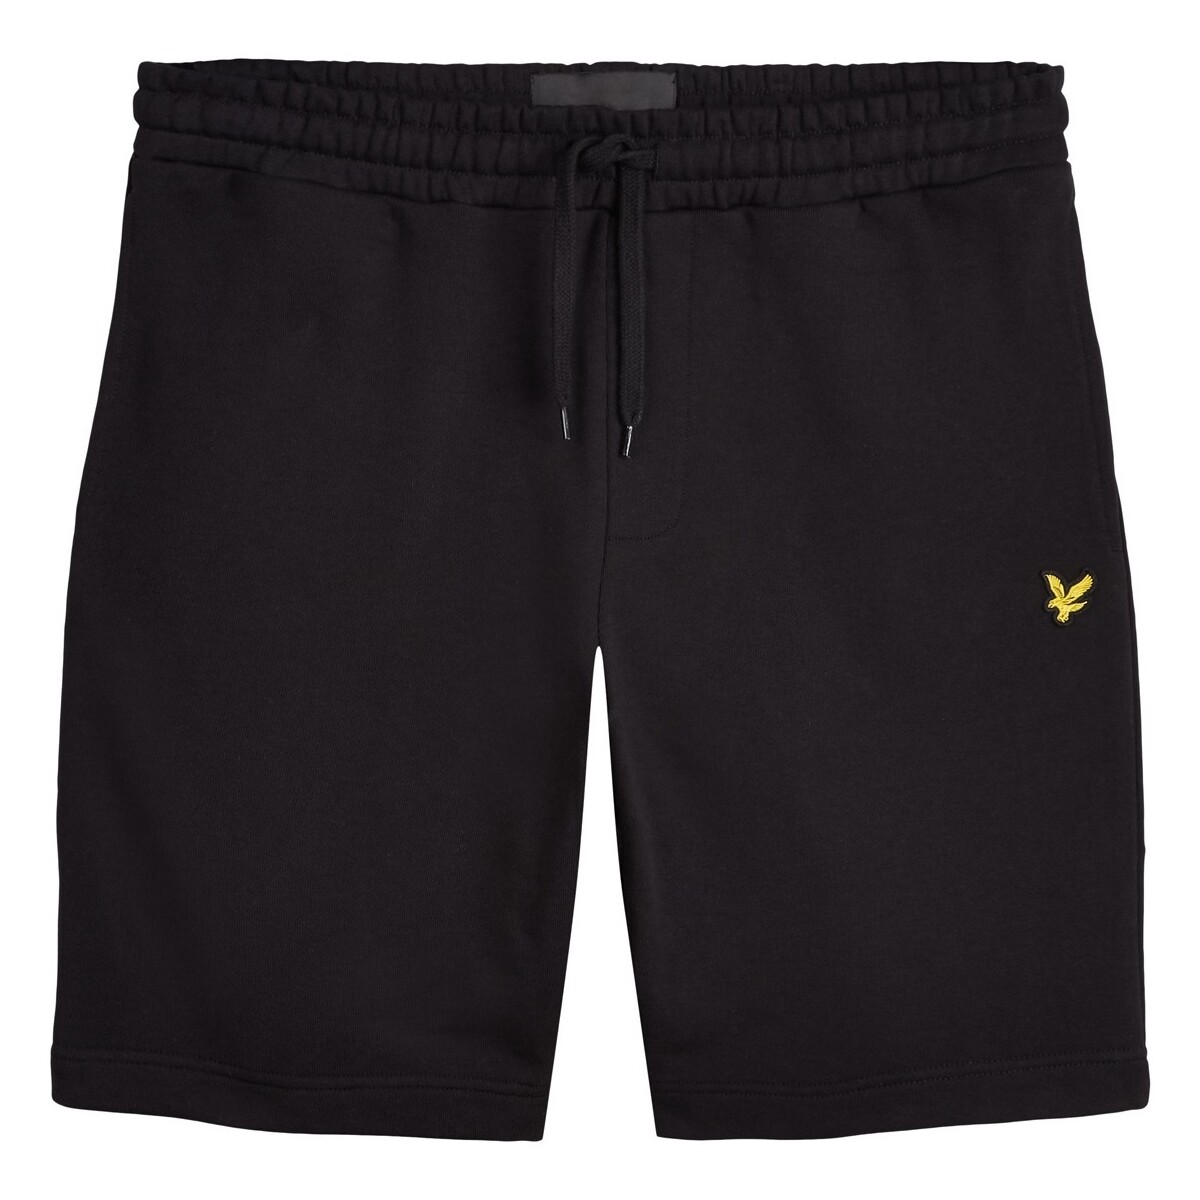 Abbigliamento Uomo Shorts / Bermuda Lyle & Scott Sweat Short Nero